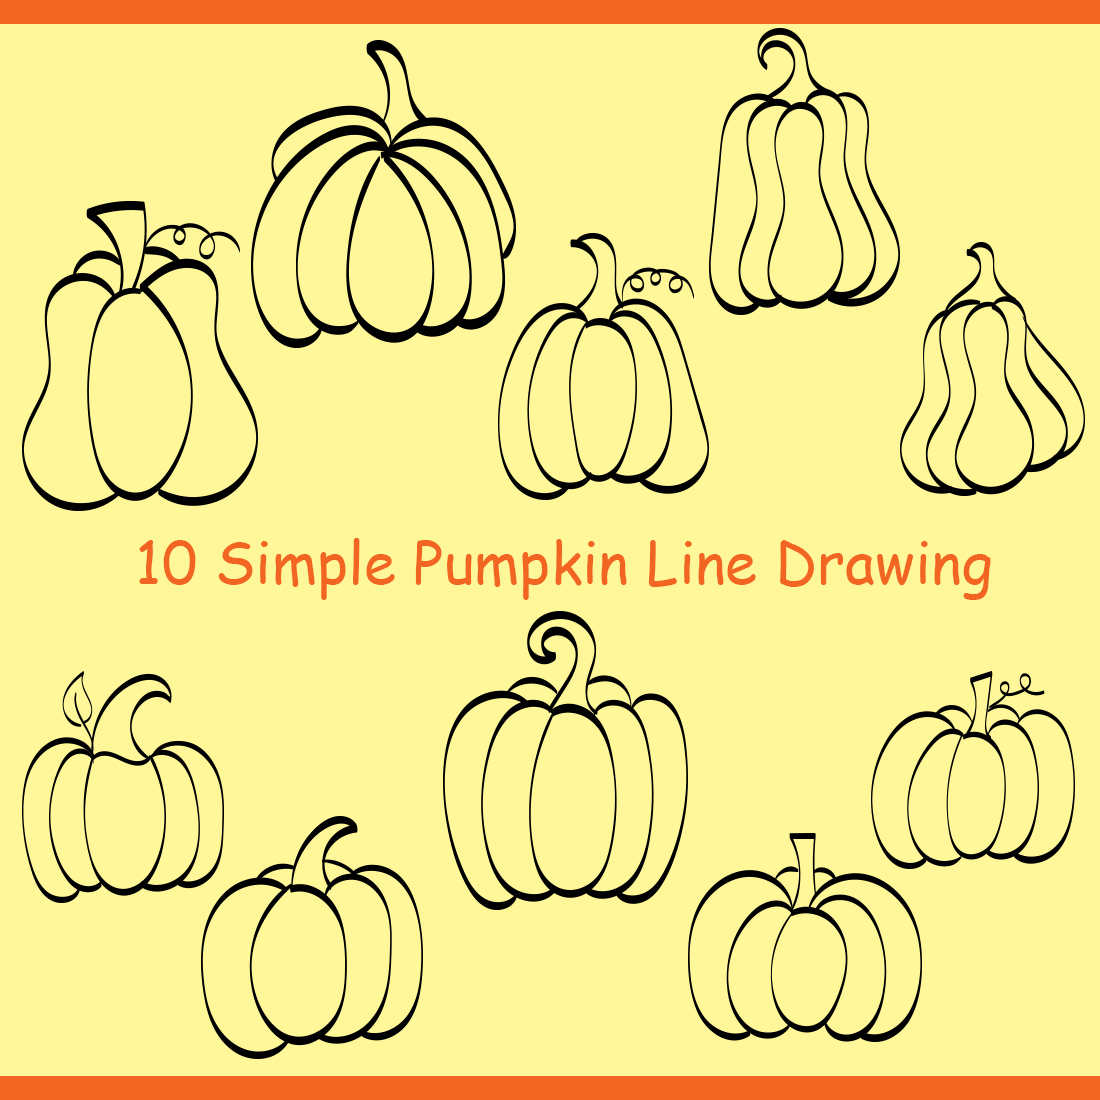 Pumpkin Drawing Tutorial for Kids - PRB ARTS